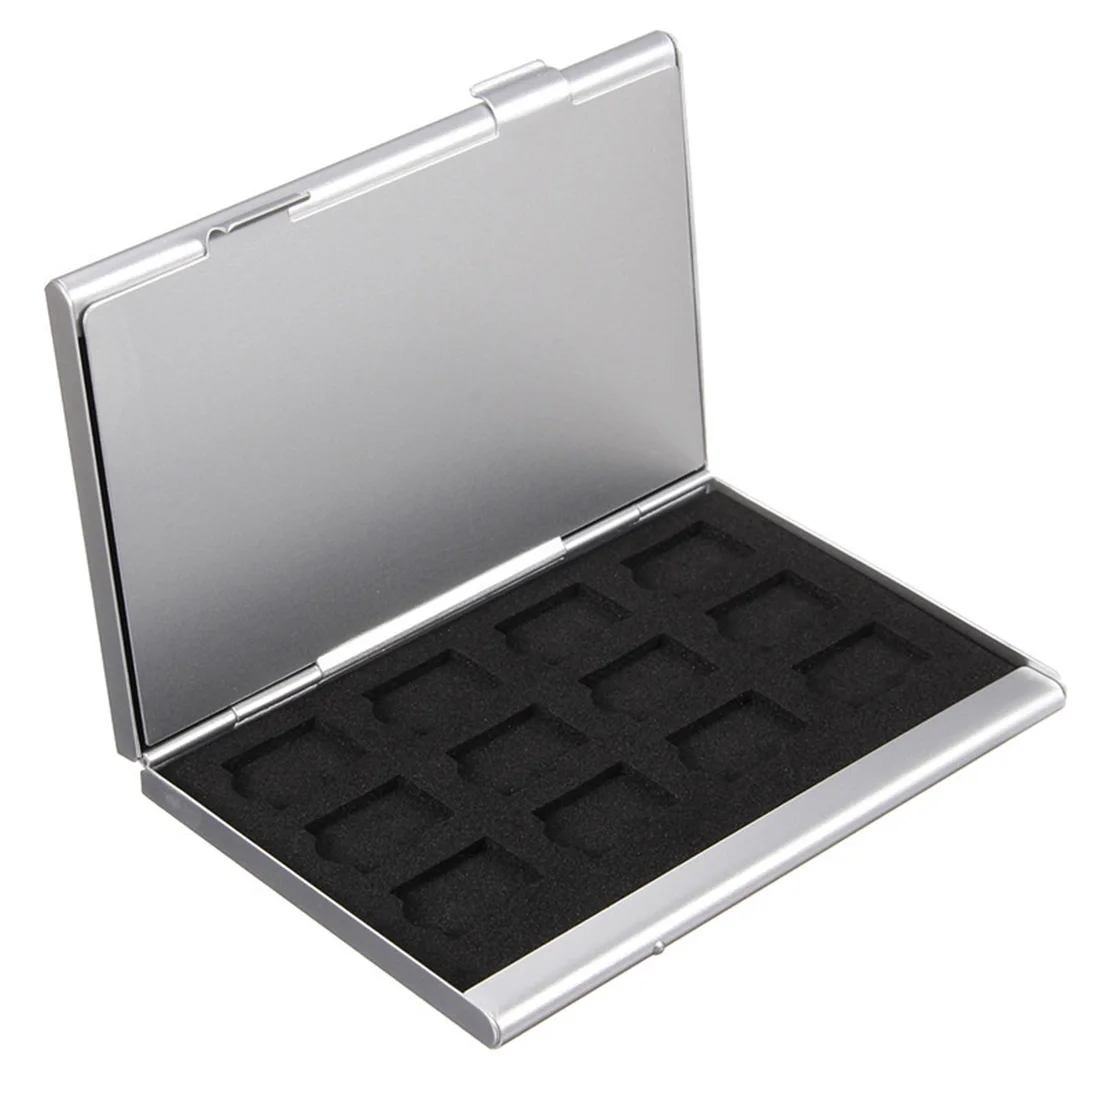 NOYOKERE, современный стиль, высокое качество, серебристый алюминиевый чехол для хранения карт памяти, коробка, держатели для микро-памяти, SD карты, 24TF